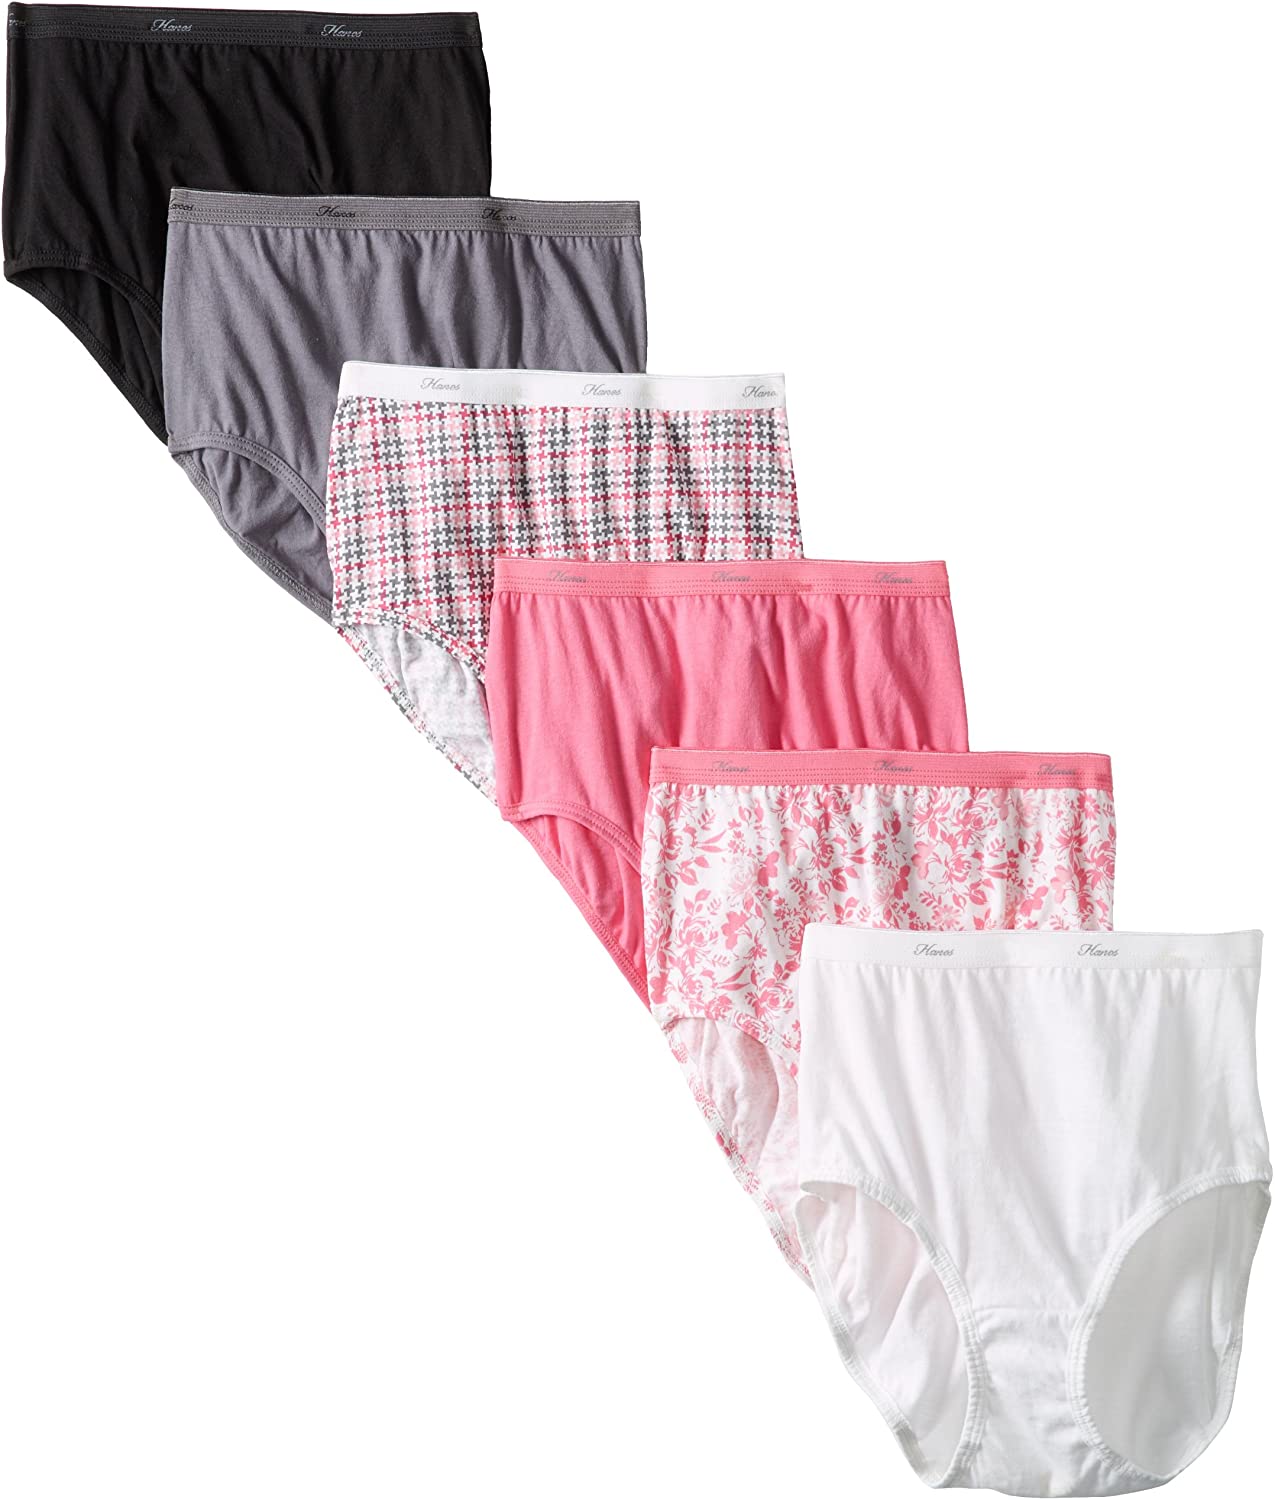 Hanes Cool Comfort Women's Cotton Hi-Cut Panties 6 Pack - PP43WB